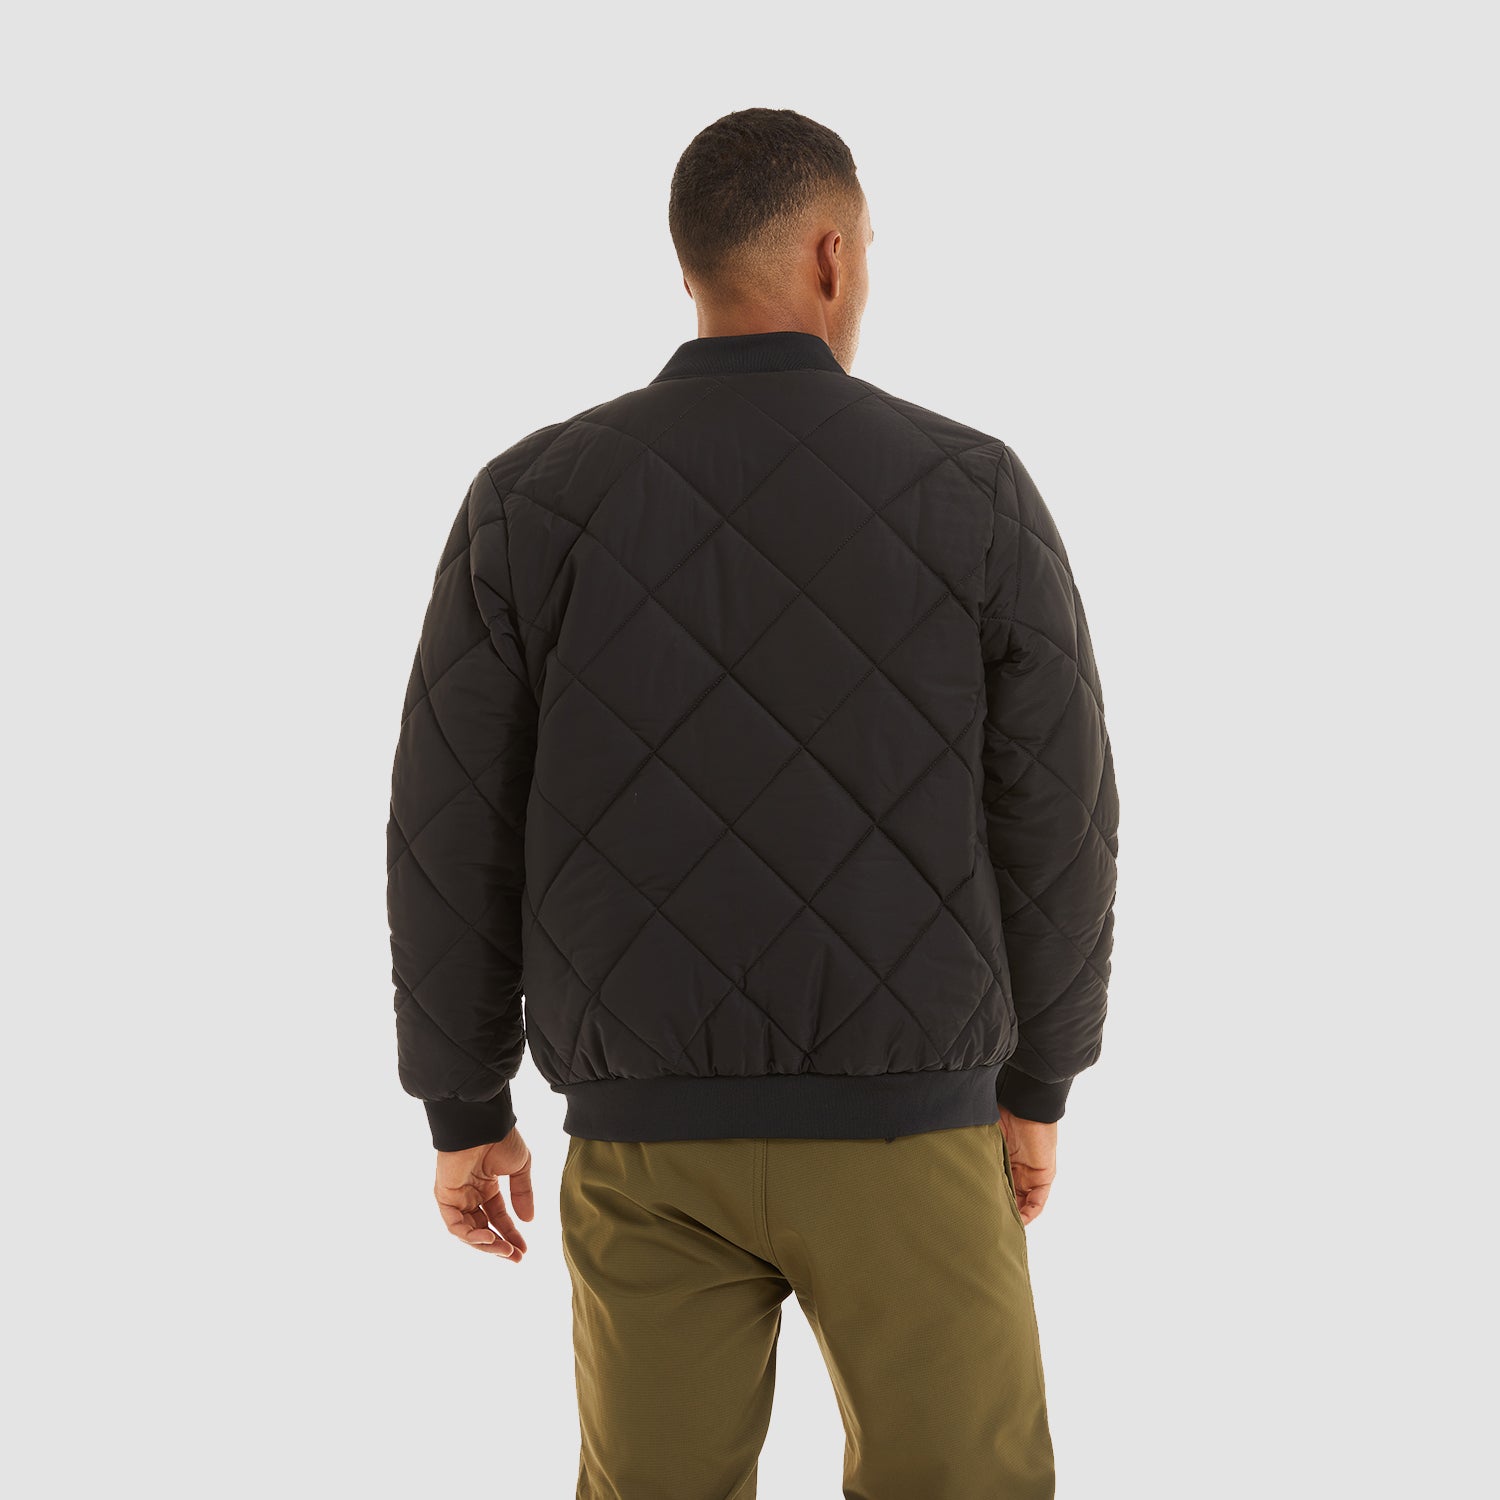 Men's Winter Bomber Jacket Outerwear with Zipper Pockets Thicken Warm Windbreaker Coats